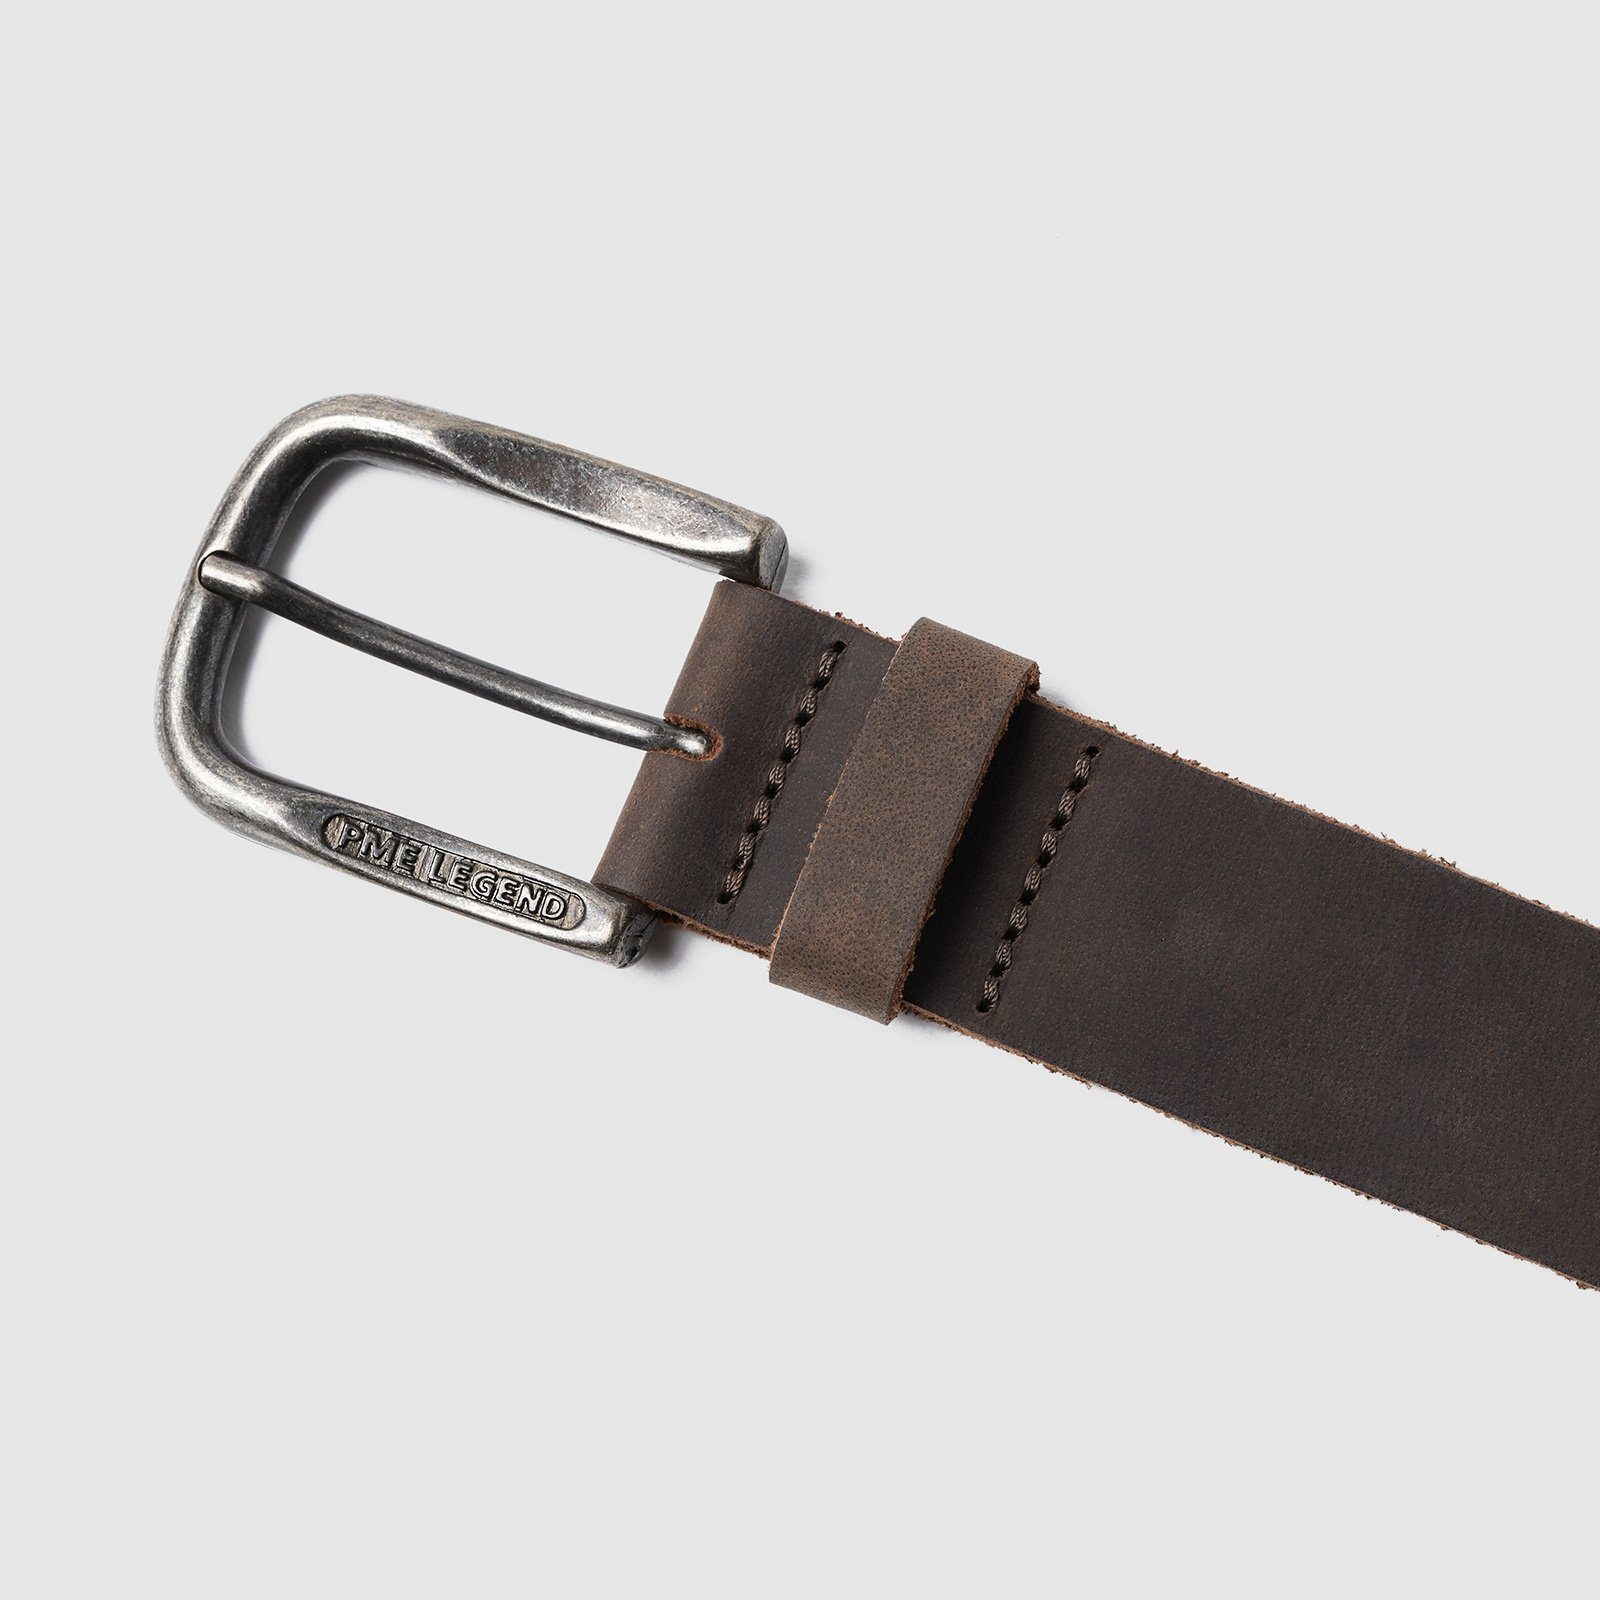 PME belt Ledergürtel Leather LEGEND d.brown Belt